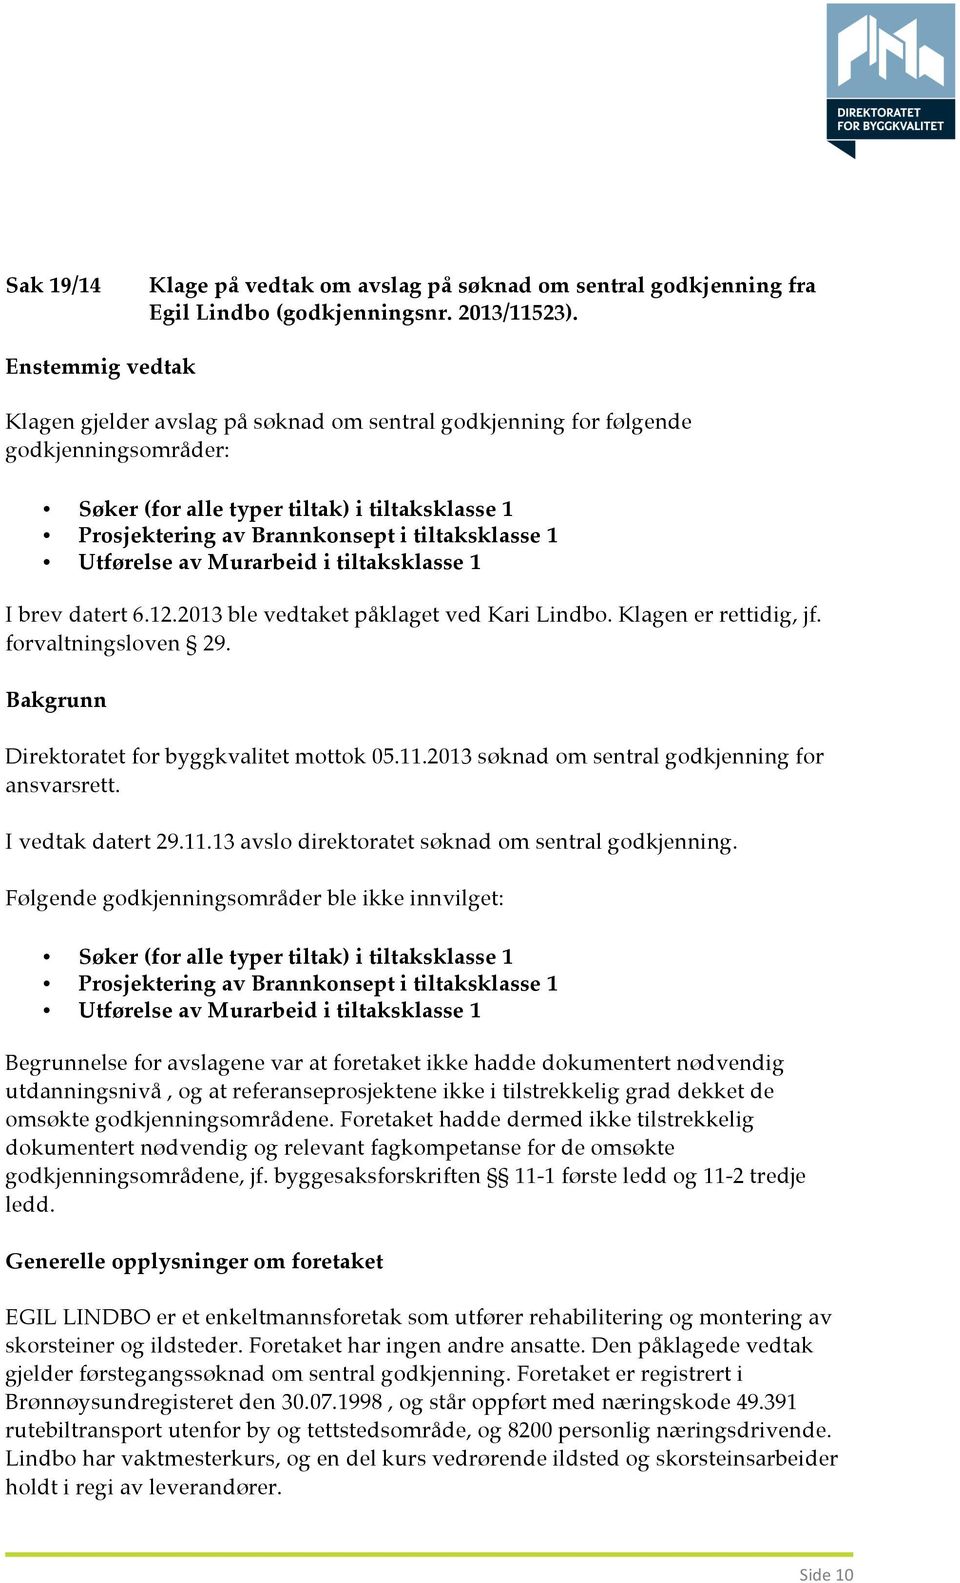 1 Utførelse av Murarbeid i tiltaksklasse 1 I brev datert 6.12.2013 ble vedtaket påklaget ved Kari Lindbo. Klagen er rettidig, jf. forvaltningsloven 29.